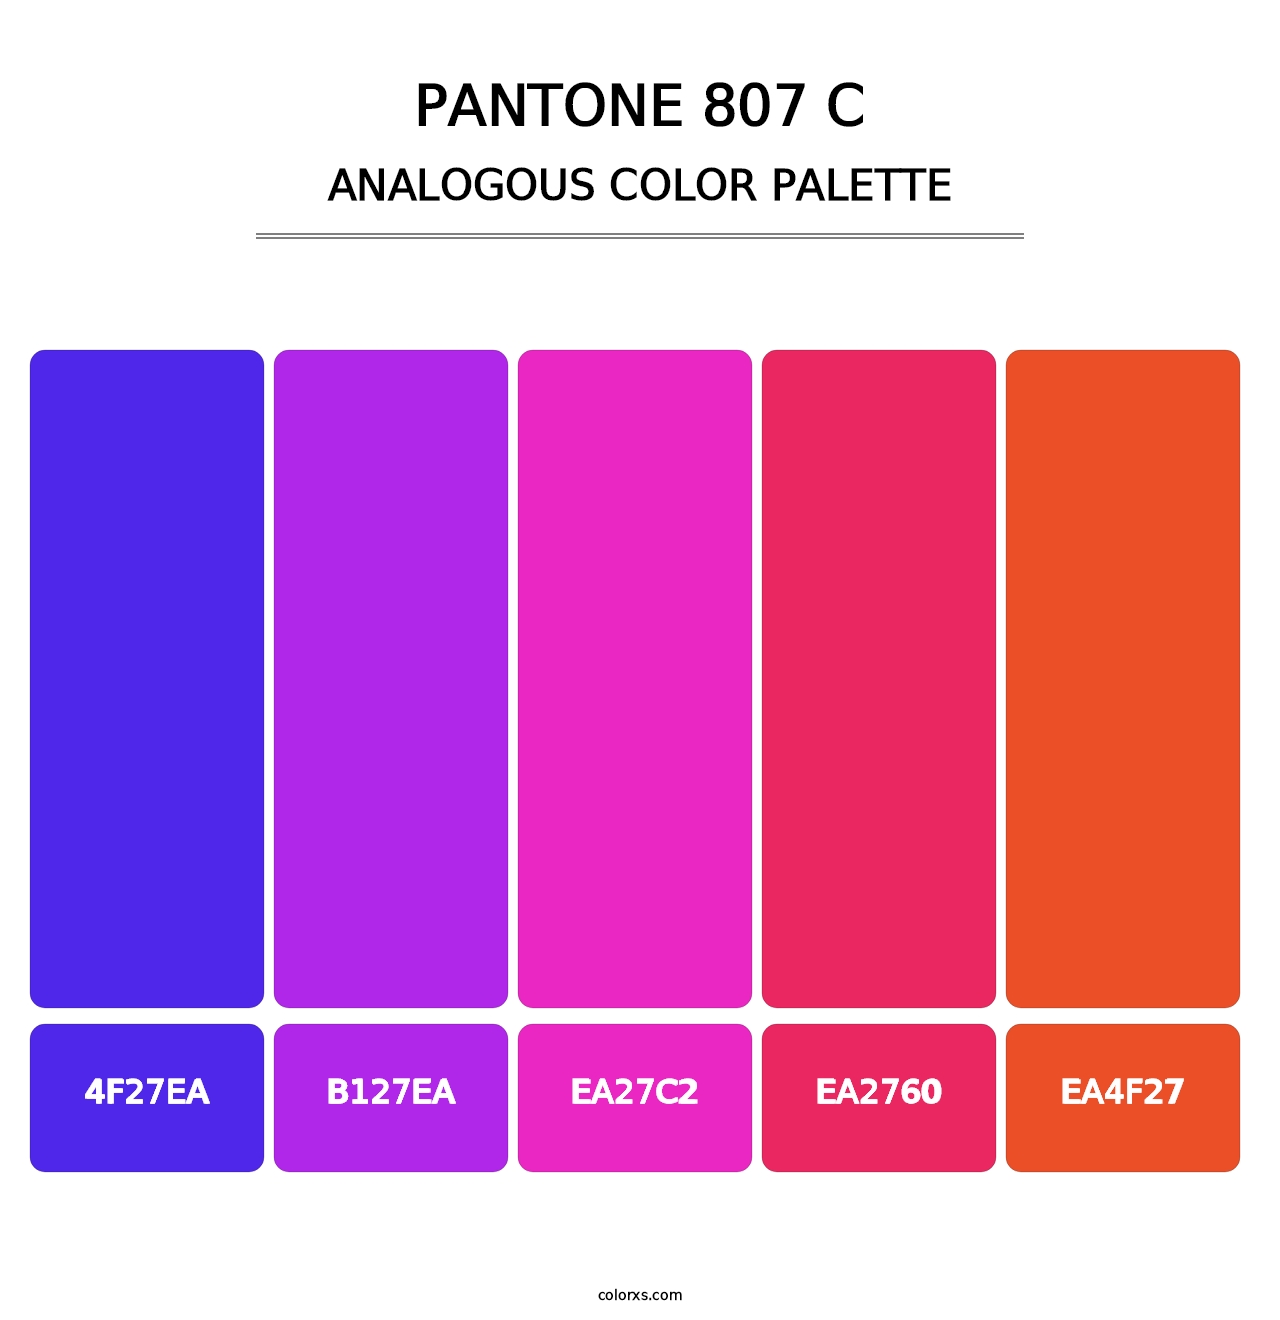 PANTONE 807 C - Analogous Color Palette